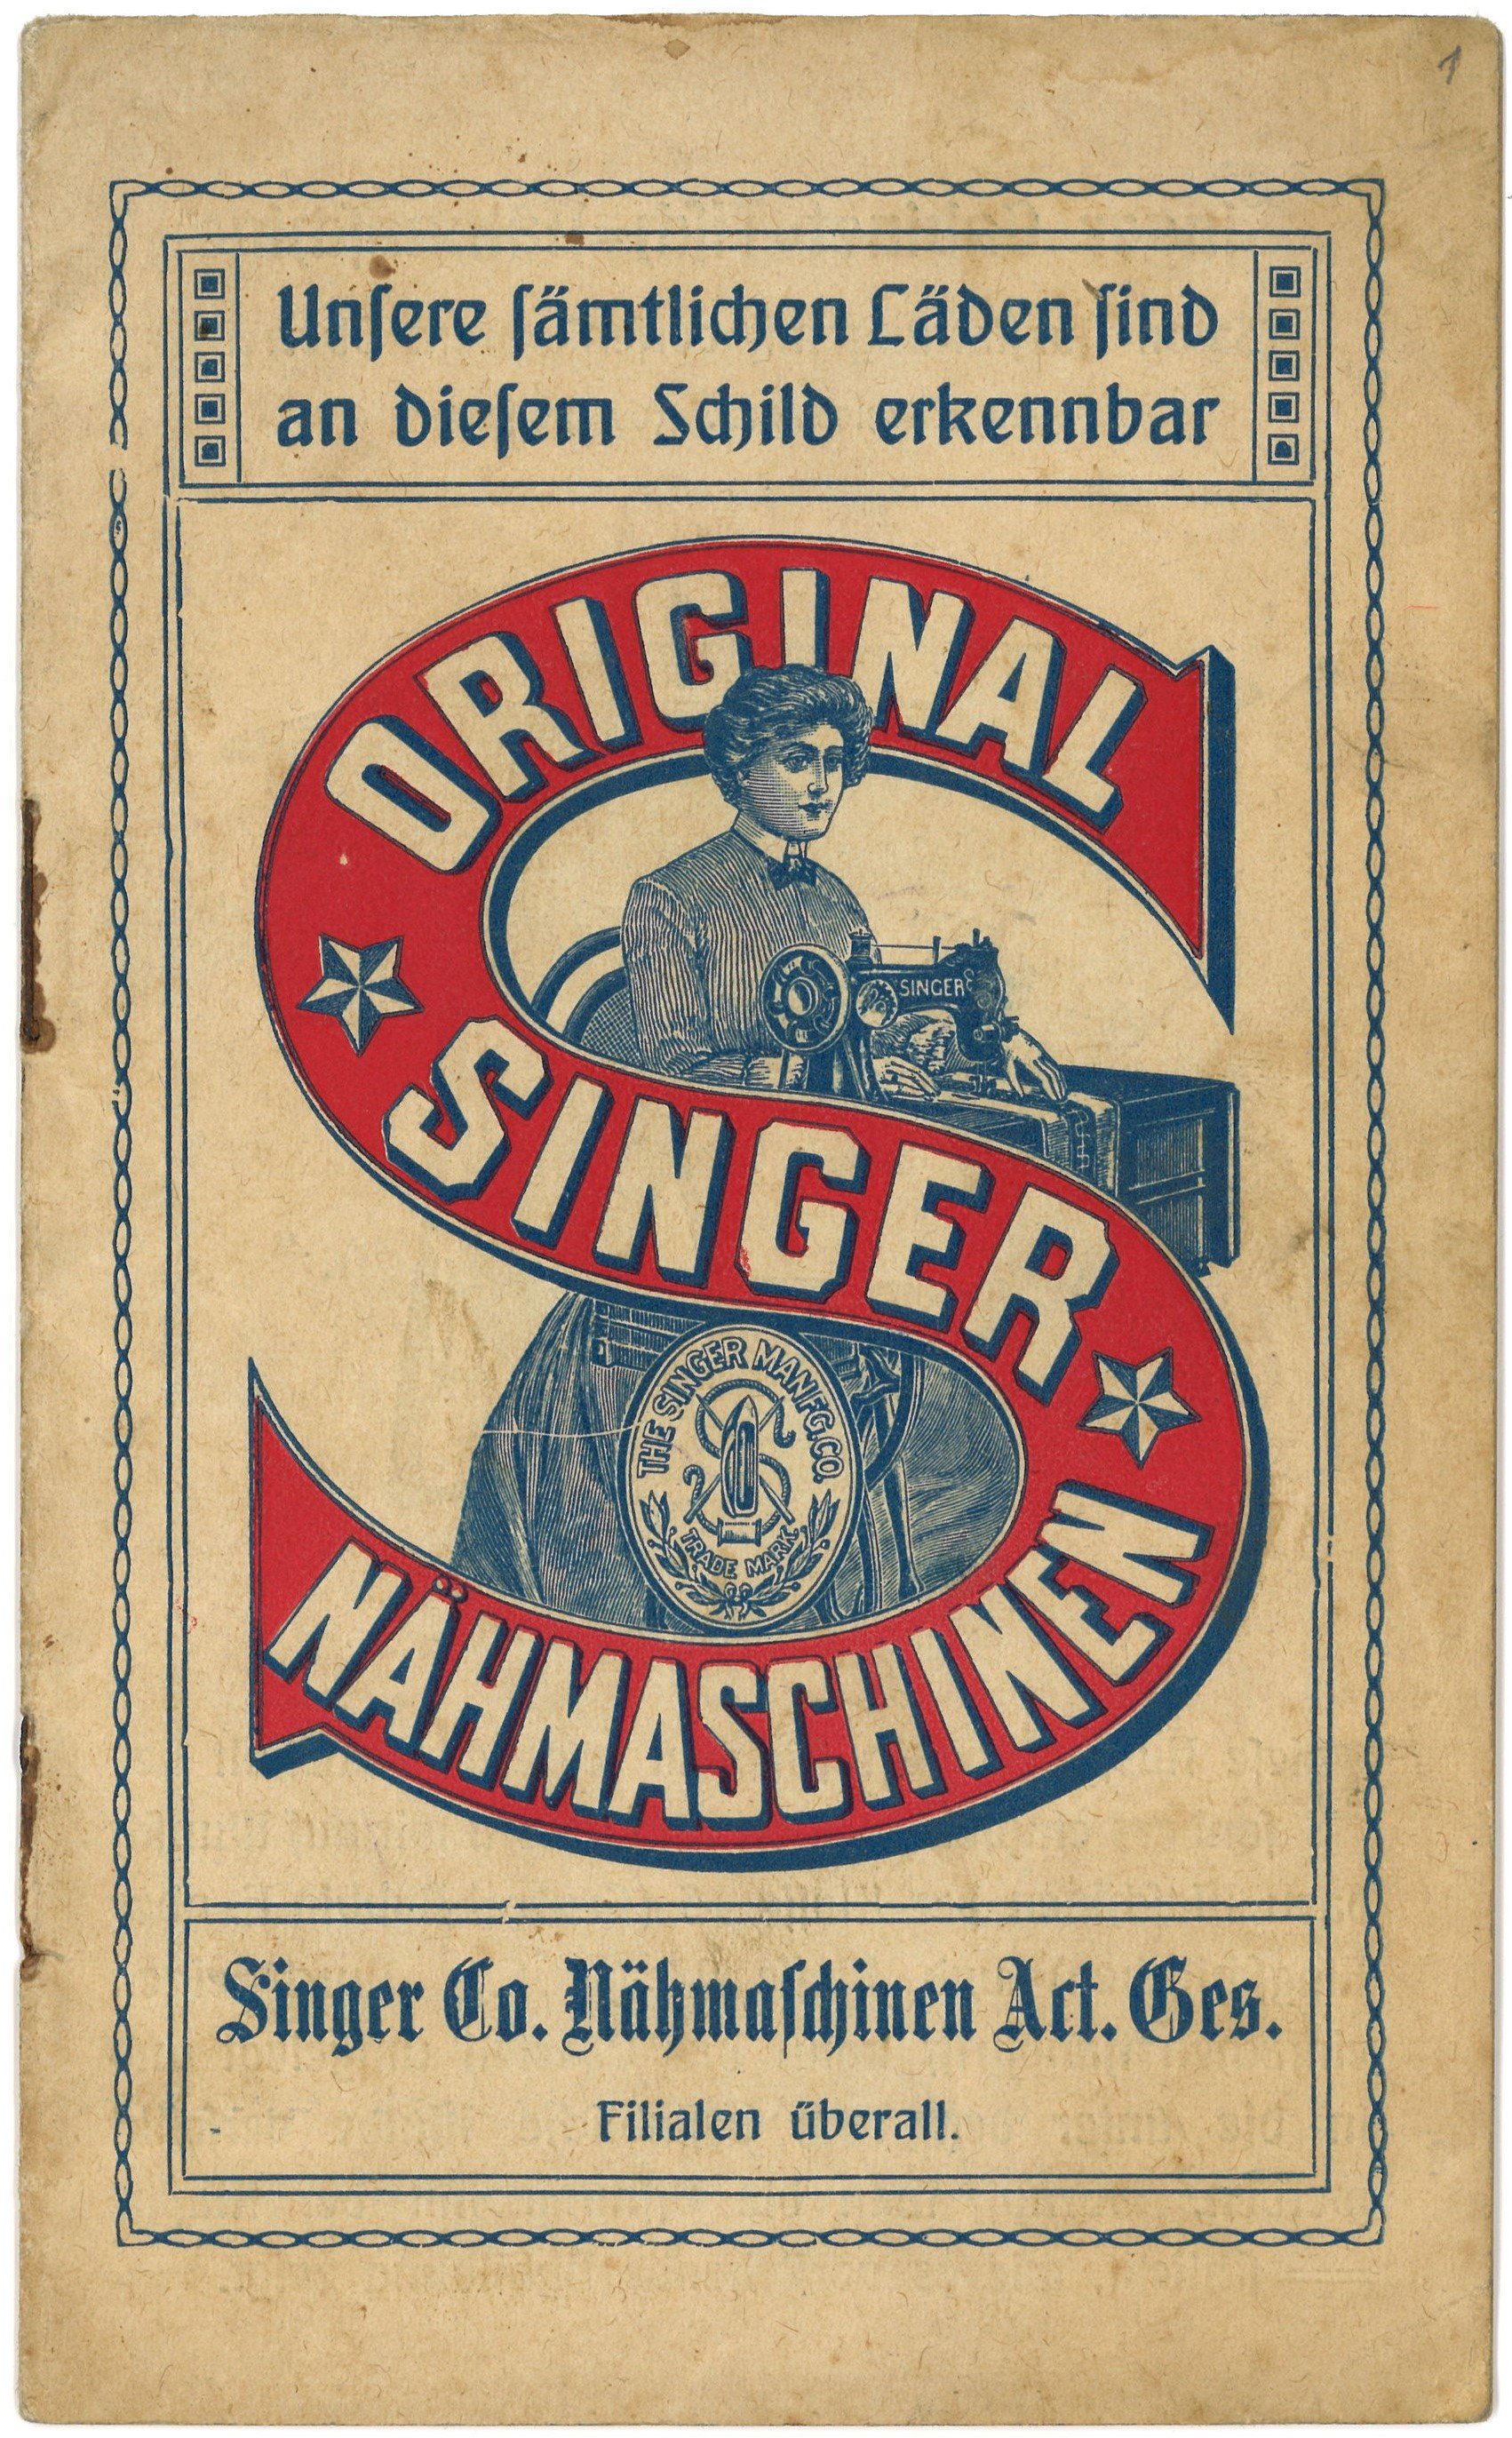 Prospekt der Singer Co. Nähmaschinen Act. Ges. Wriezen (um 1910) (Landesgeschichtliche Vereinigung für die Mark Brandenburg e.V., Archiv CC BY)